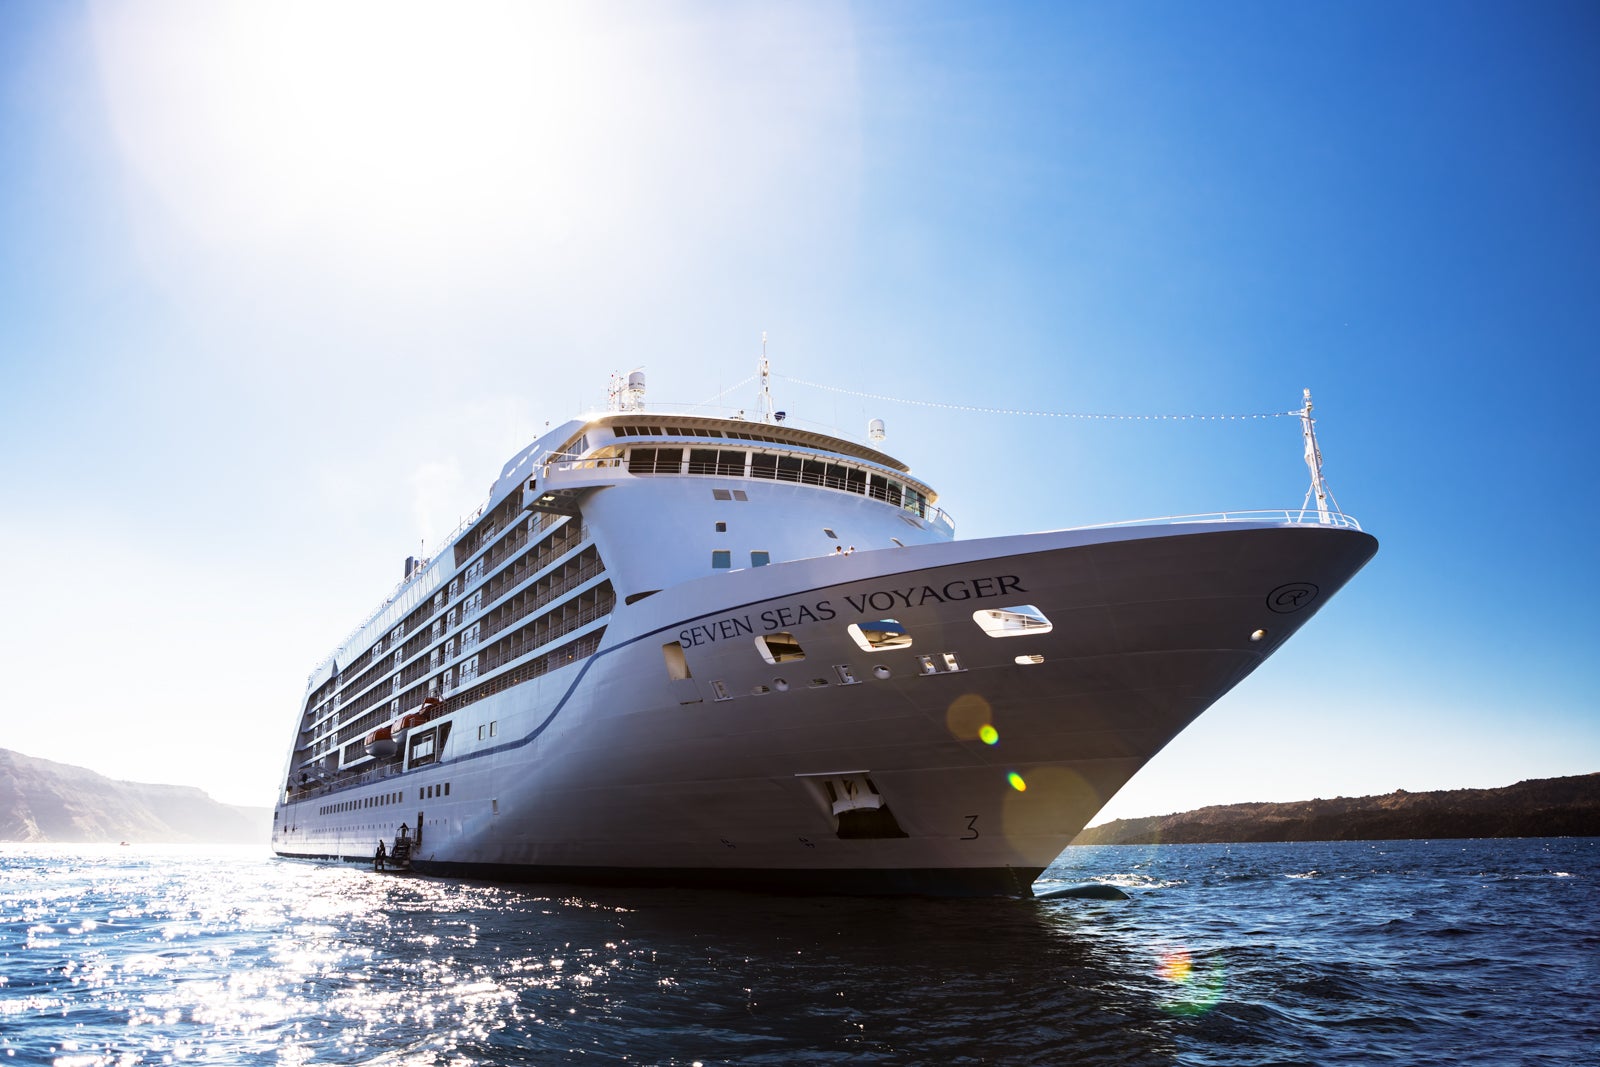 seven seas cruises prices